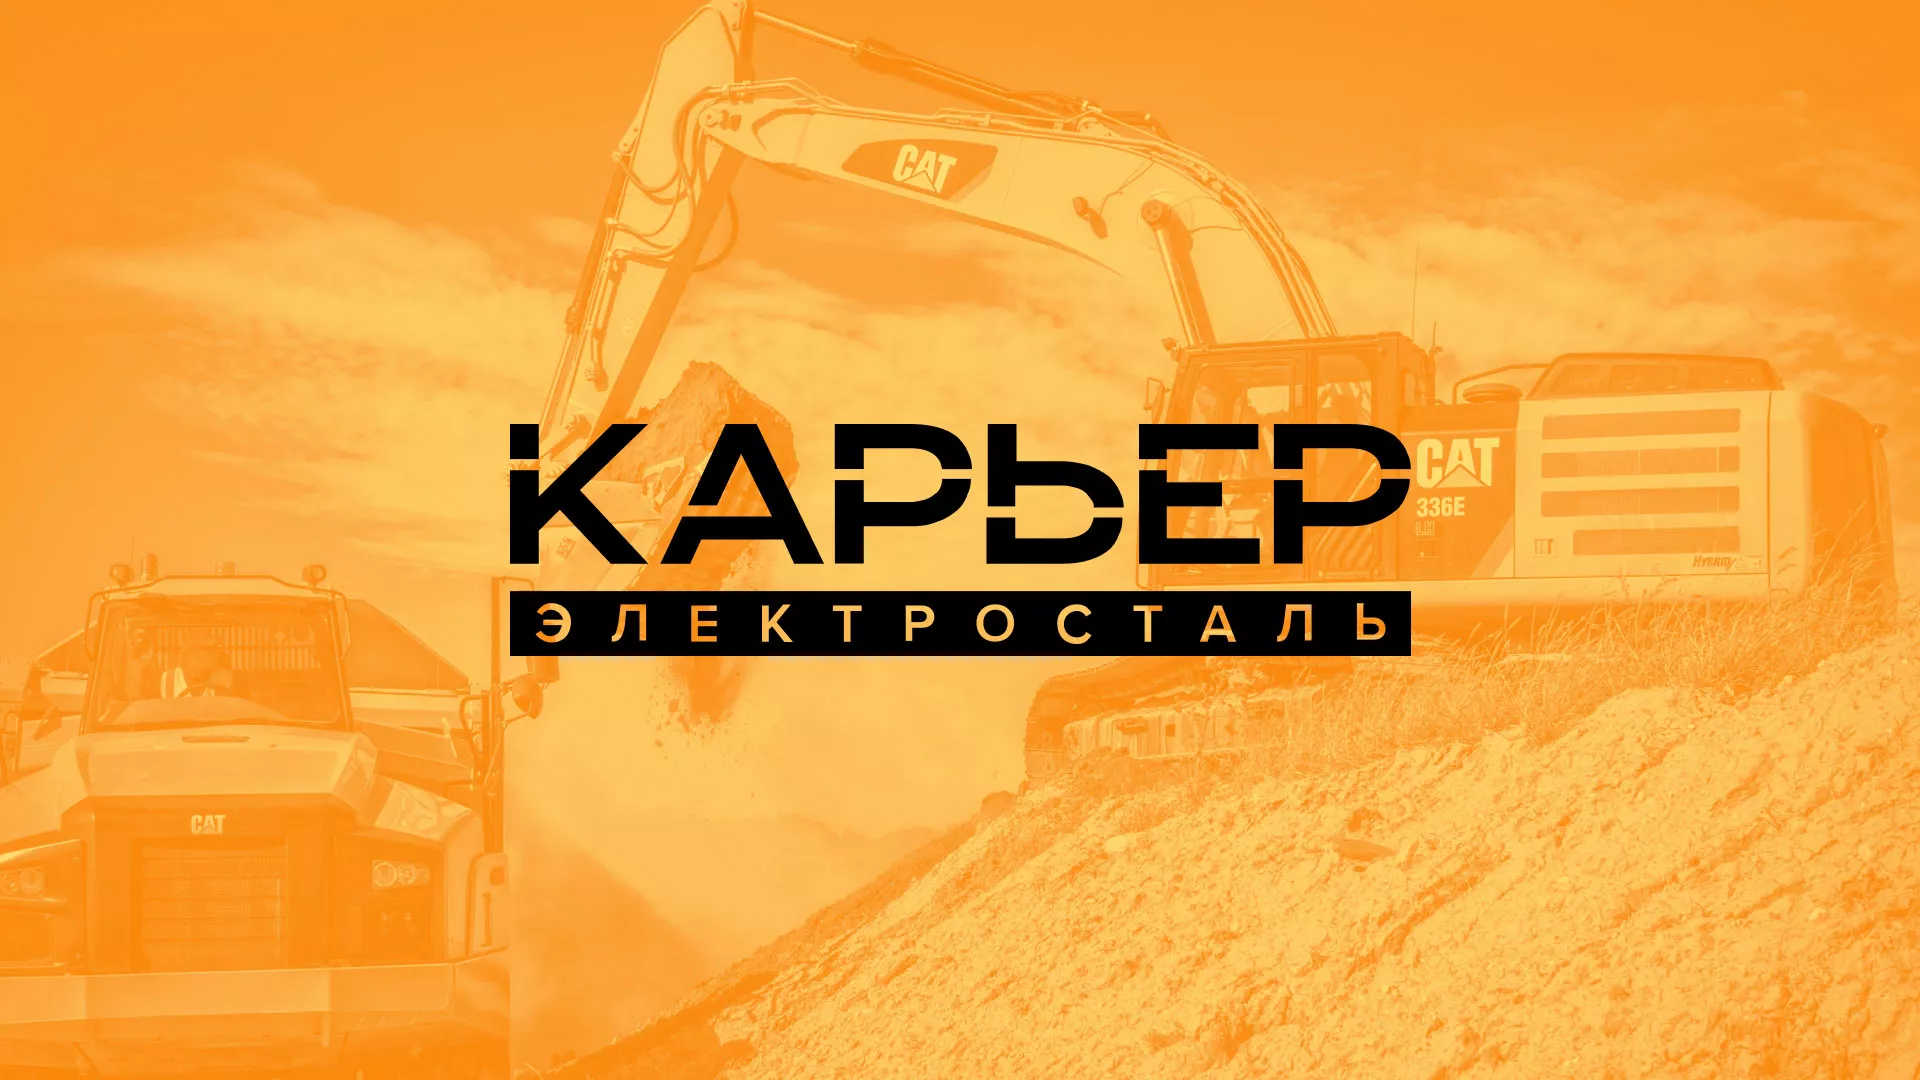 Разработка сайта по продаже нерудных материалов «Карьер» в Карачаевске